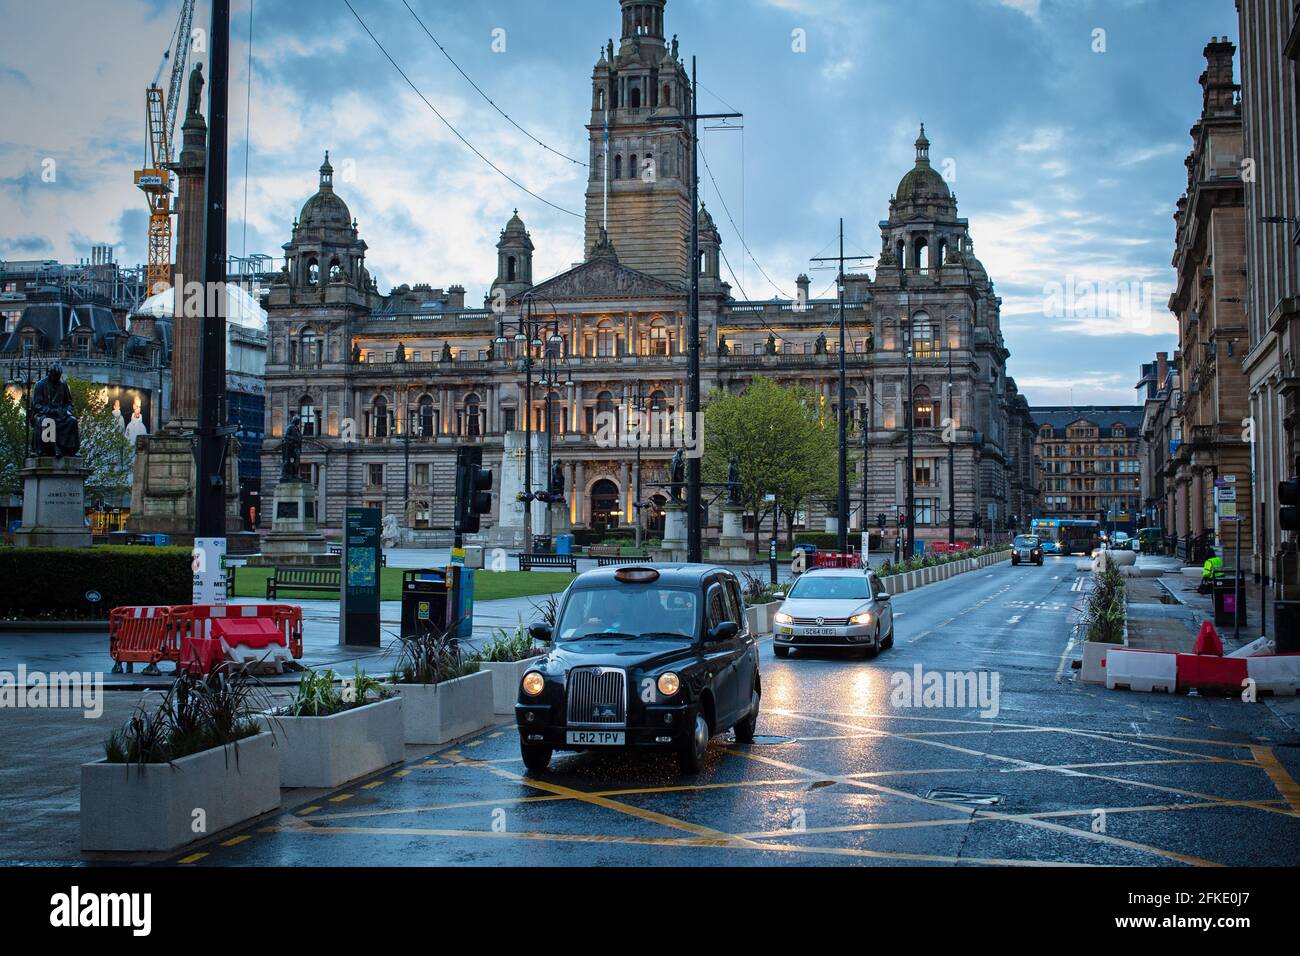 Glasgow City Chambers sur George Square dans le centre-ville de Glasgow, en Écosse. Banque D'Images